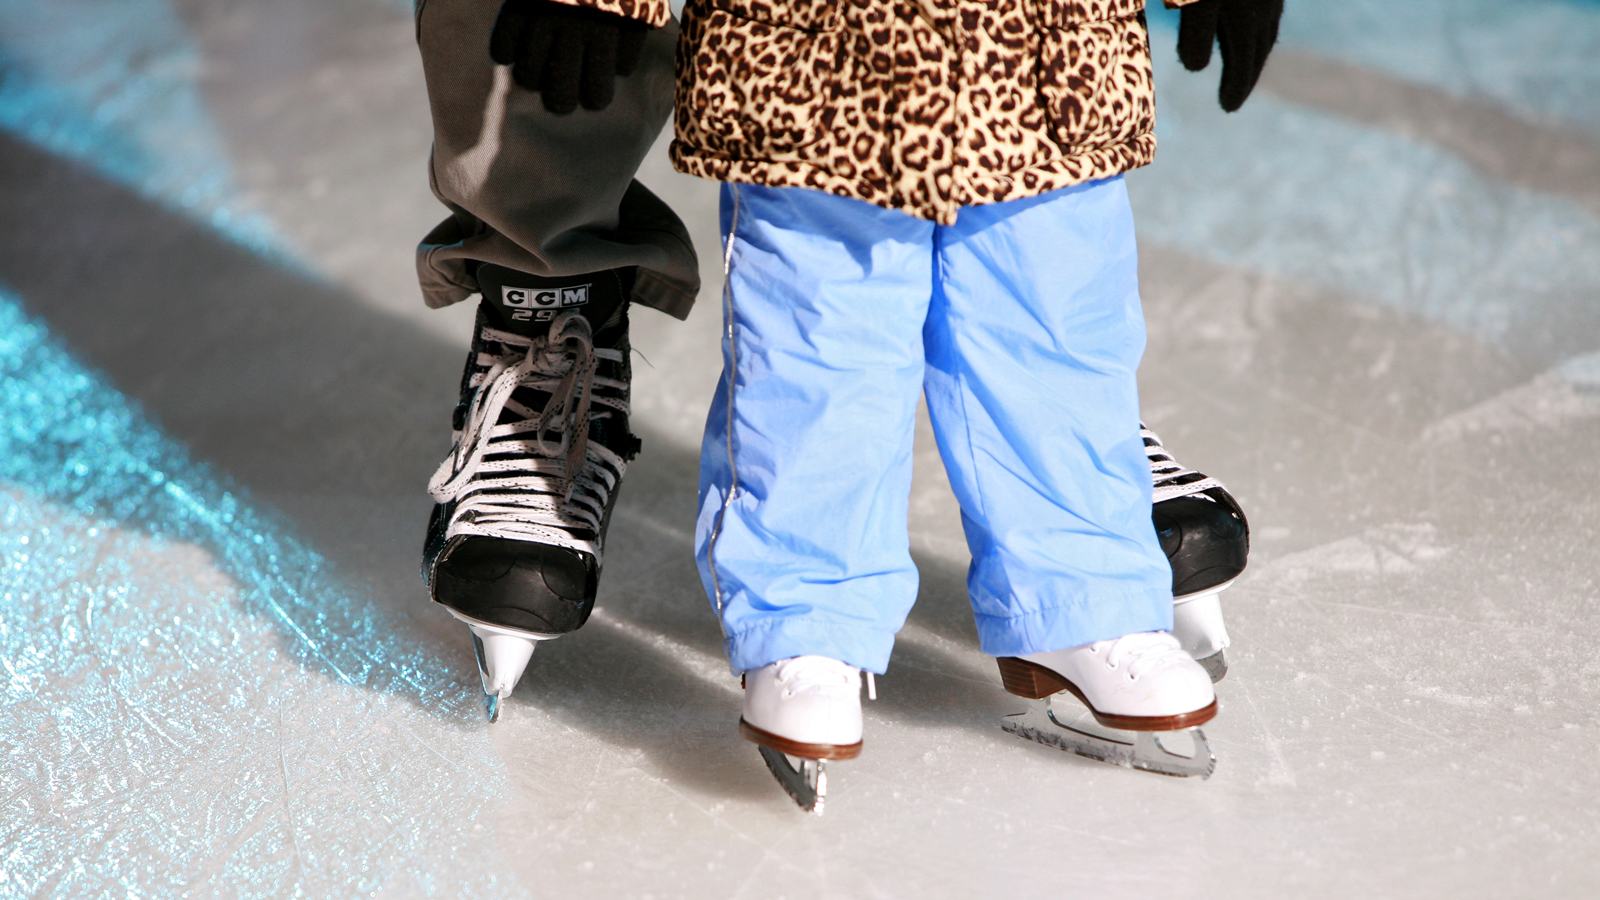 Бесплатно прокатиться на коньках смогут многодетные семьи